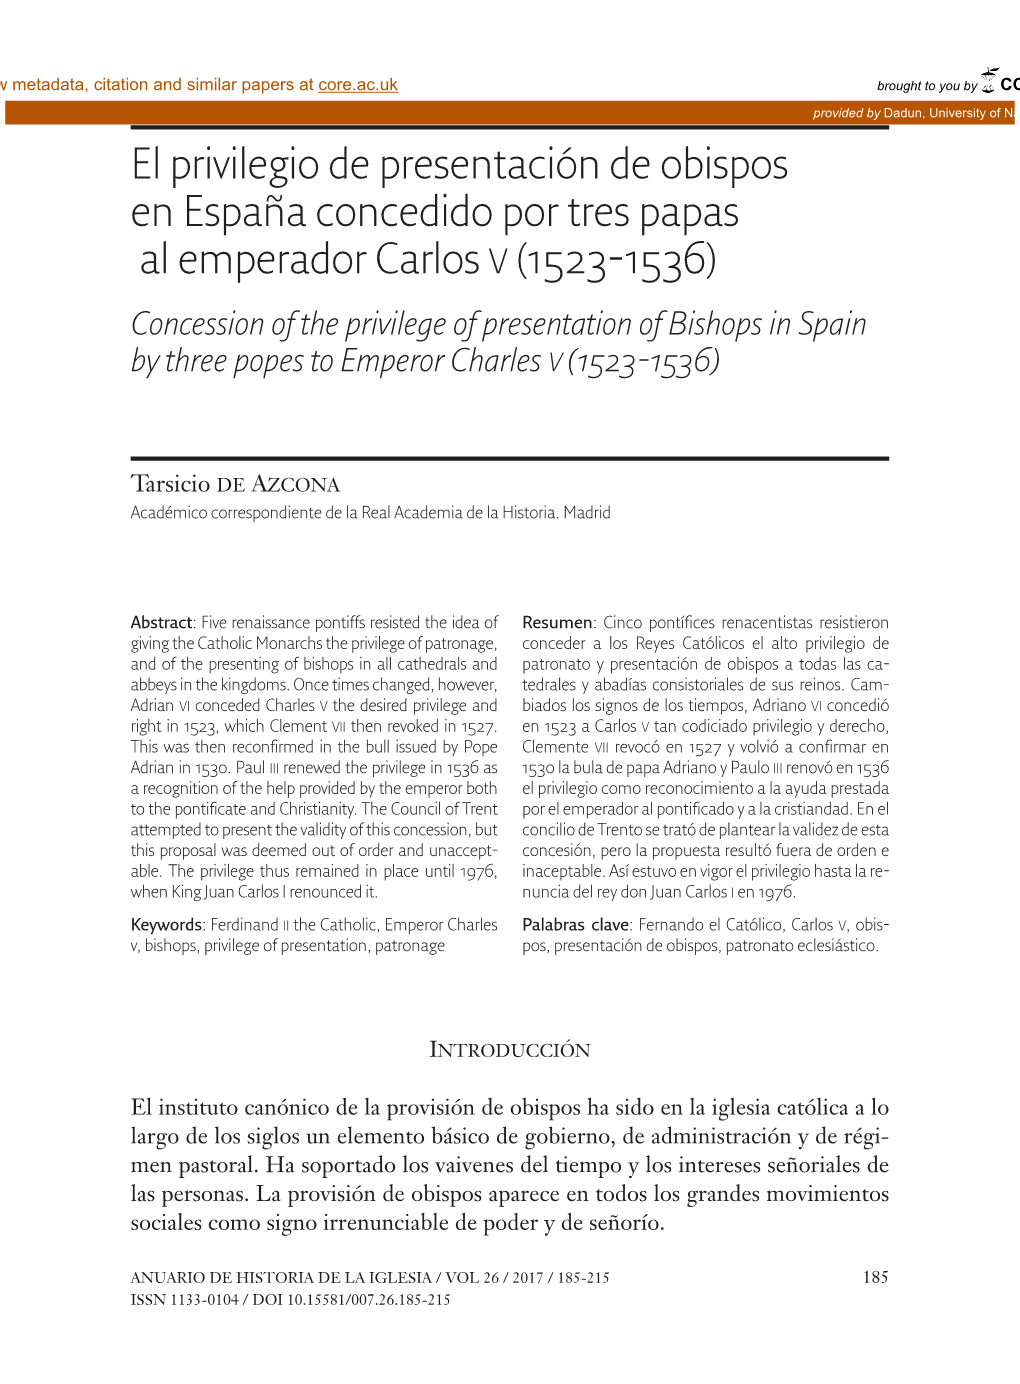 El Privilegio De Presentación De Obispos En España